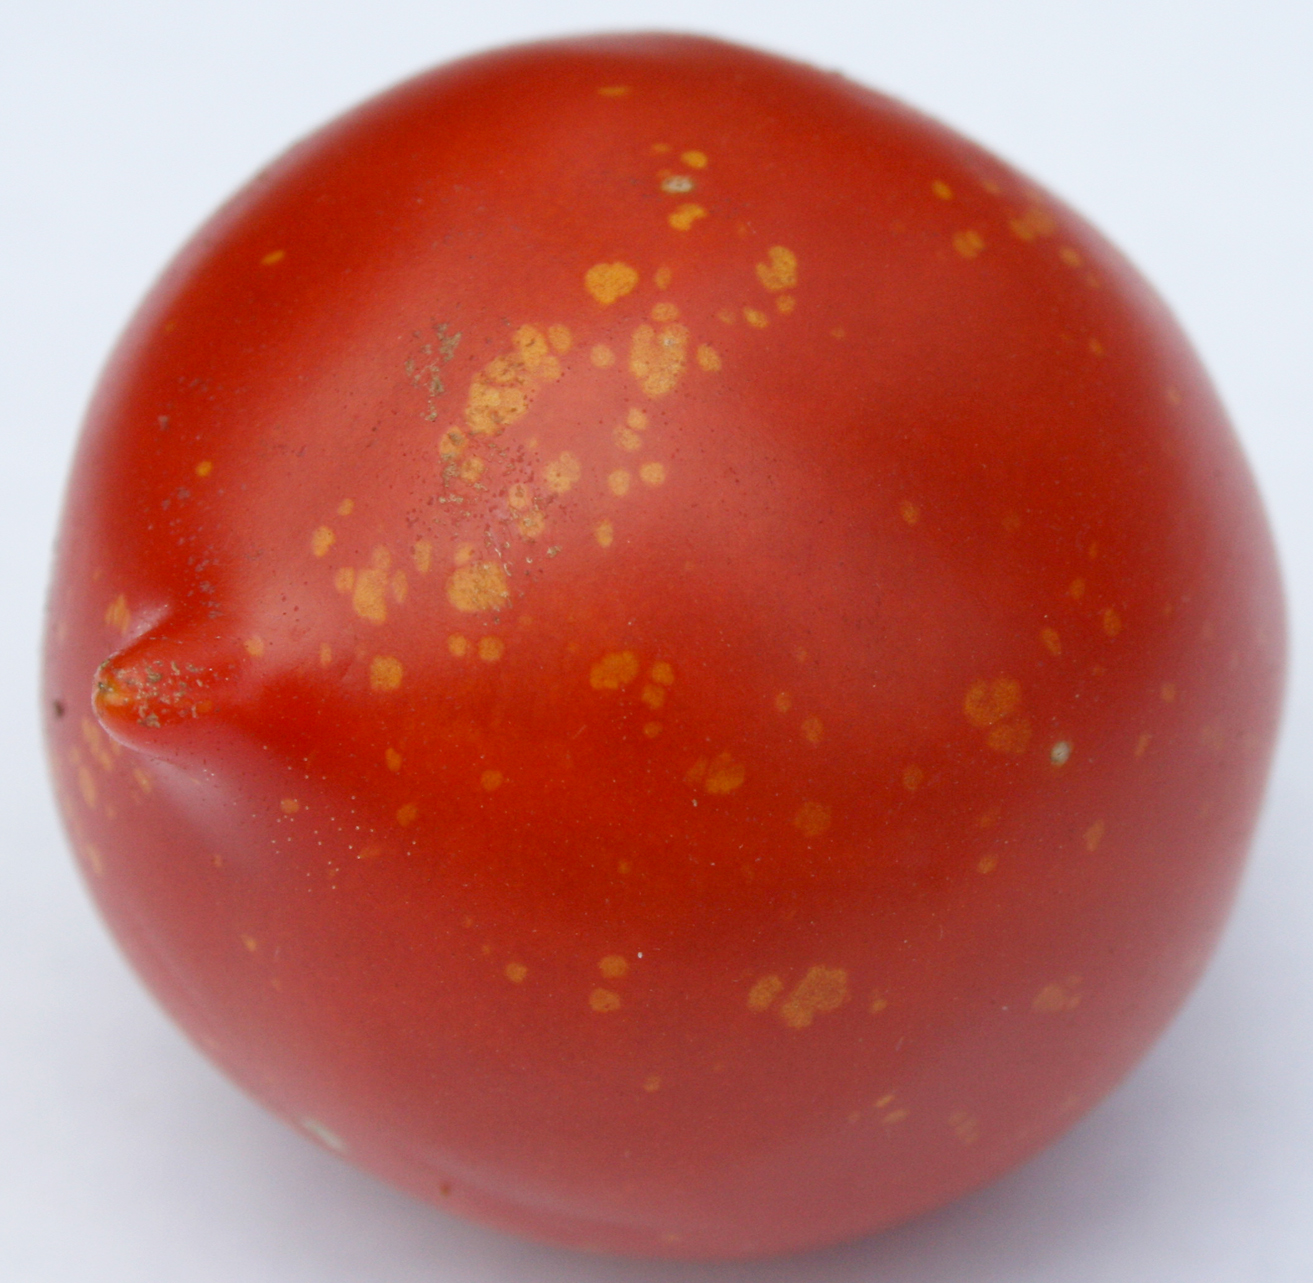 Gold fleck on tomato fruit.